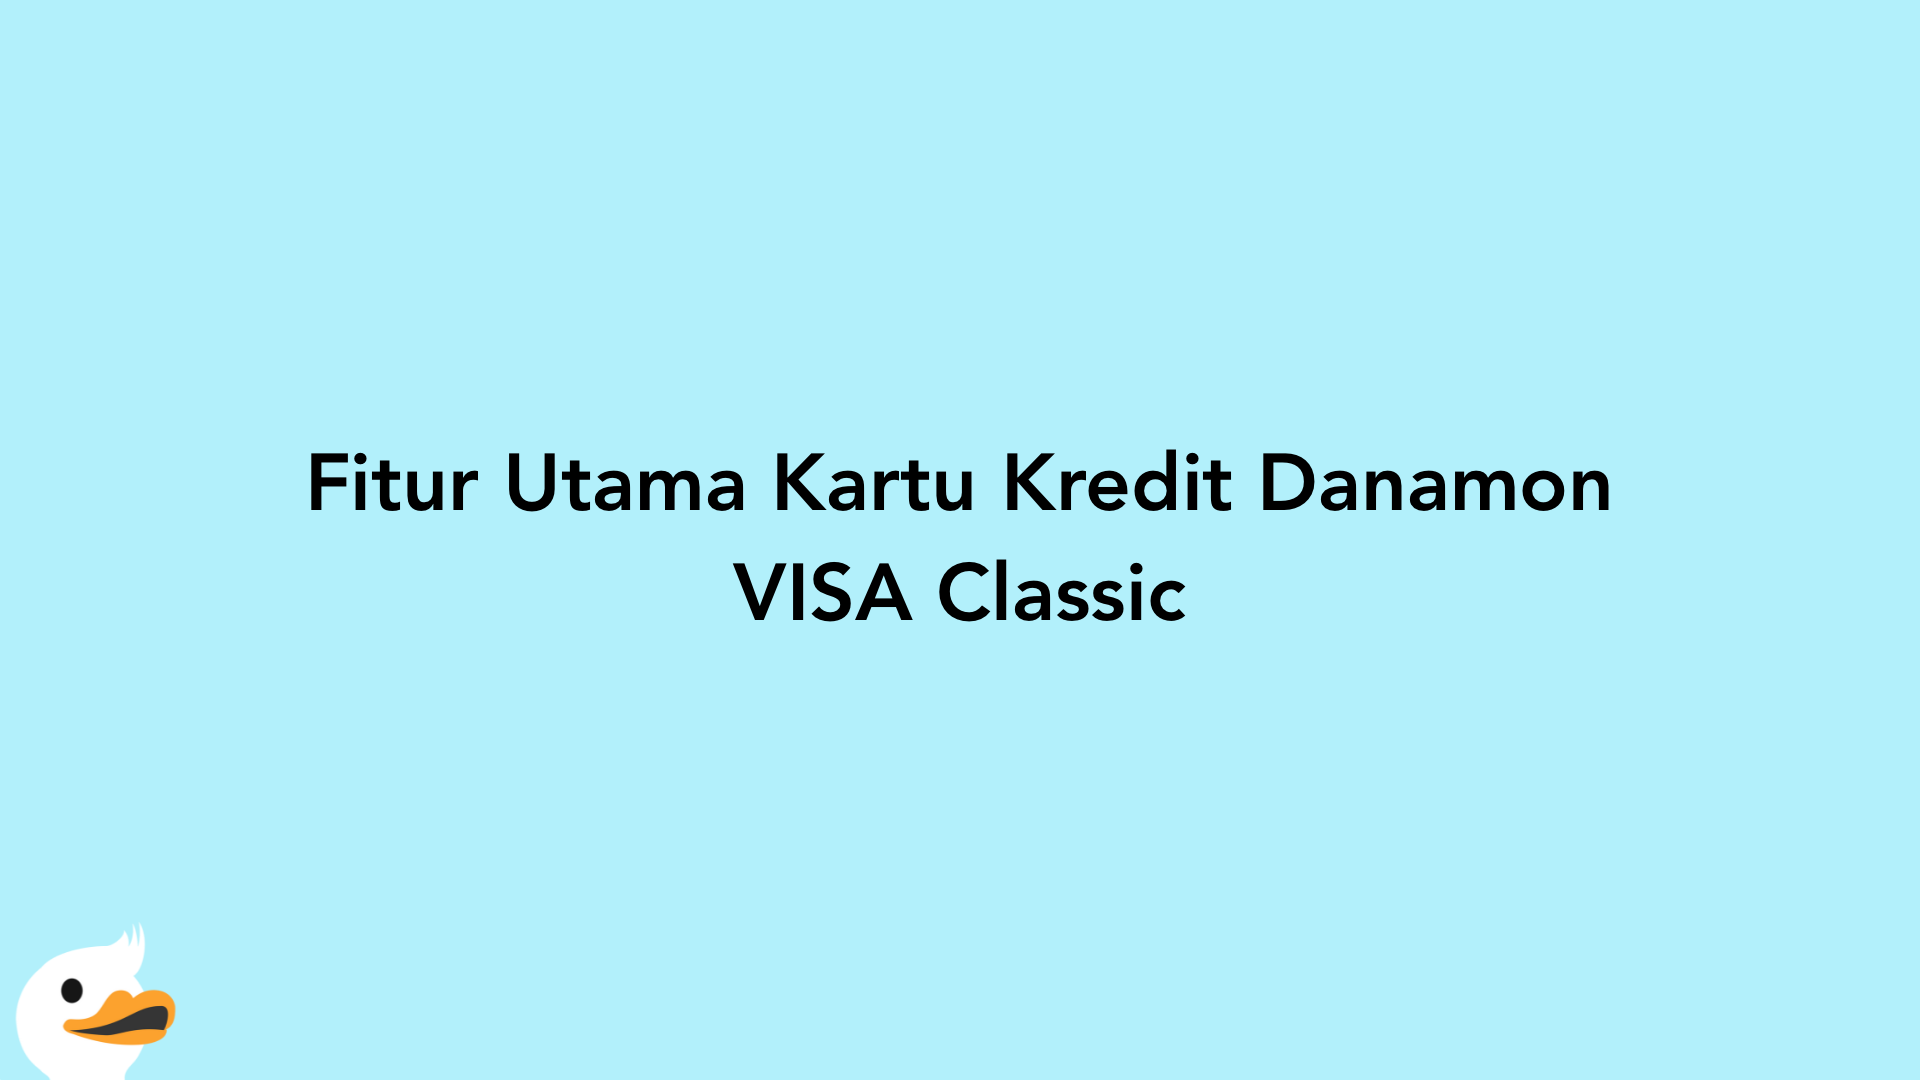 Fitur Utama Kartu Kredit Danamon VISA Classic